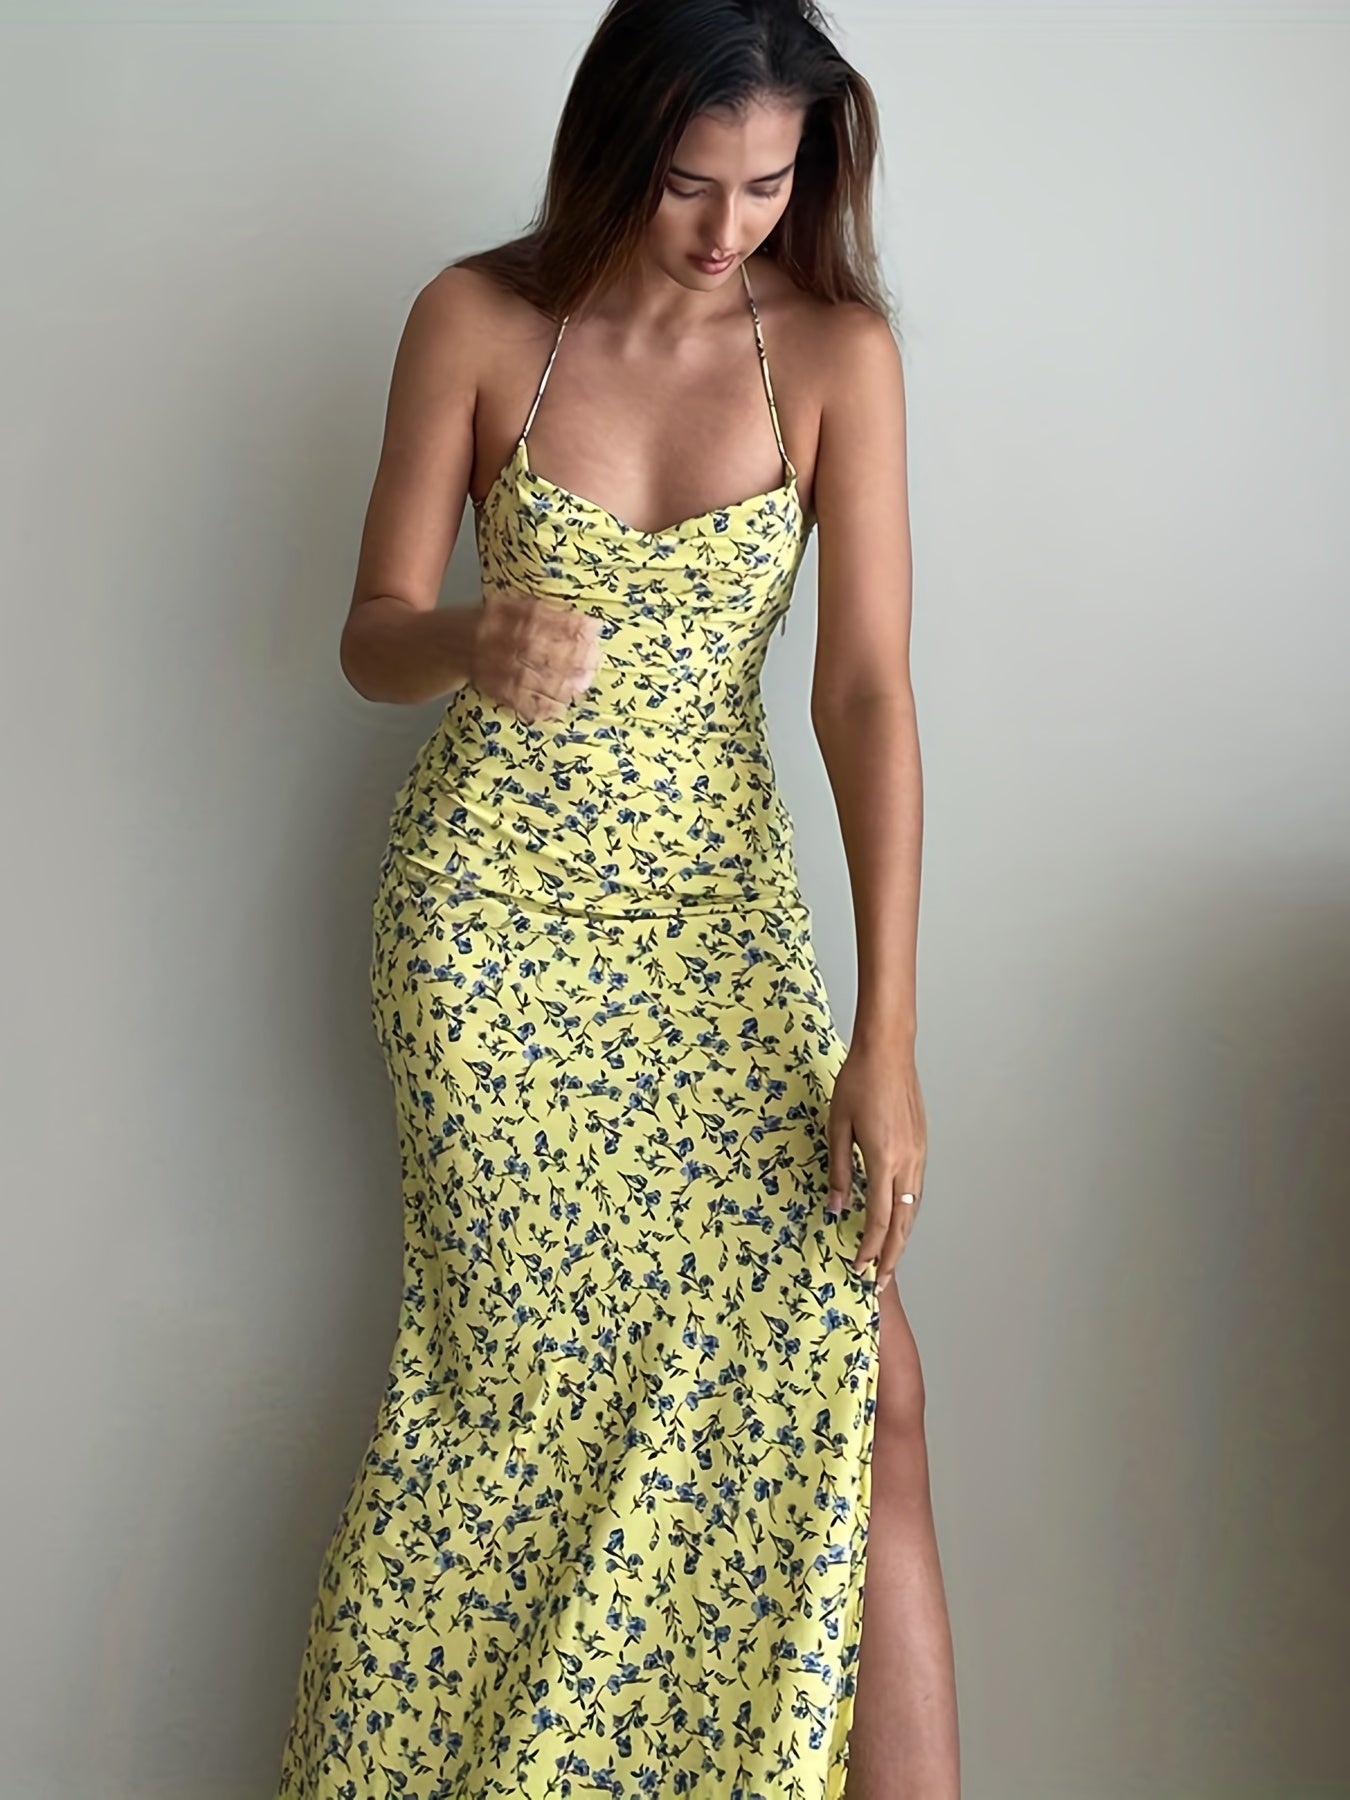 Antmvs Floral Print Split Halter Neck Dress, Sexy Backless Halter Dress For Spring & Summer, Women's Clothing